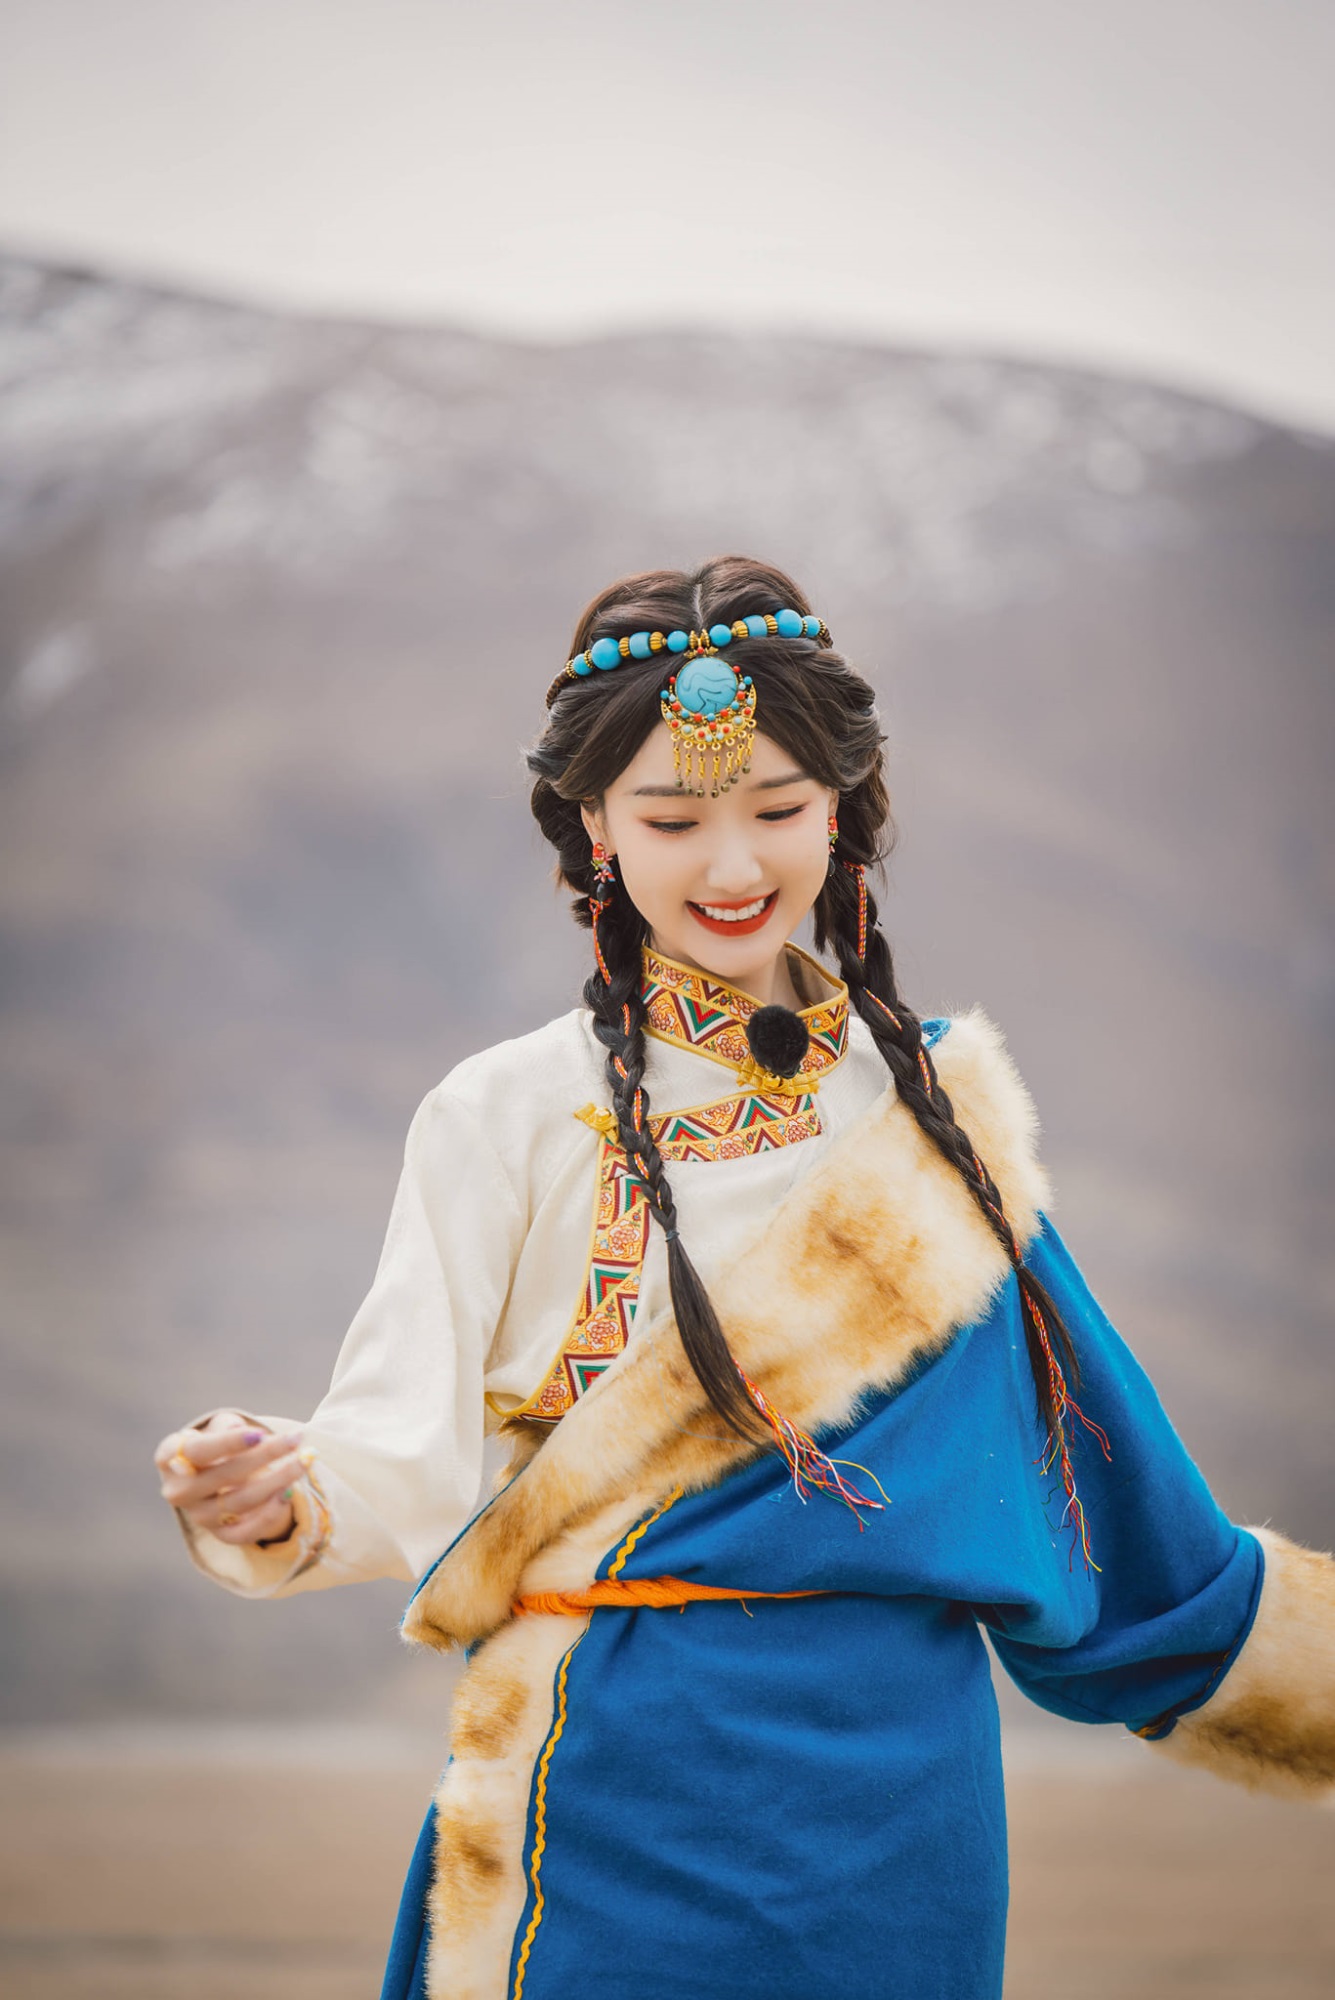 Mê mẩn trước nhan sắc ngọt ngào của Mao Hiểu Đồng khi hóa thân thành công chúa Tây Tạng - Ảnh 2